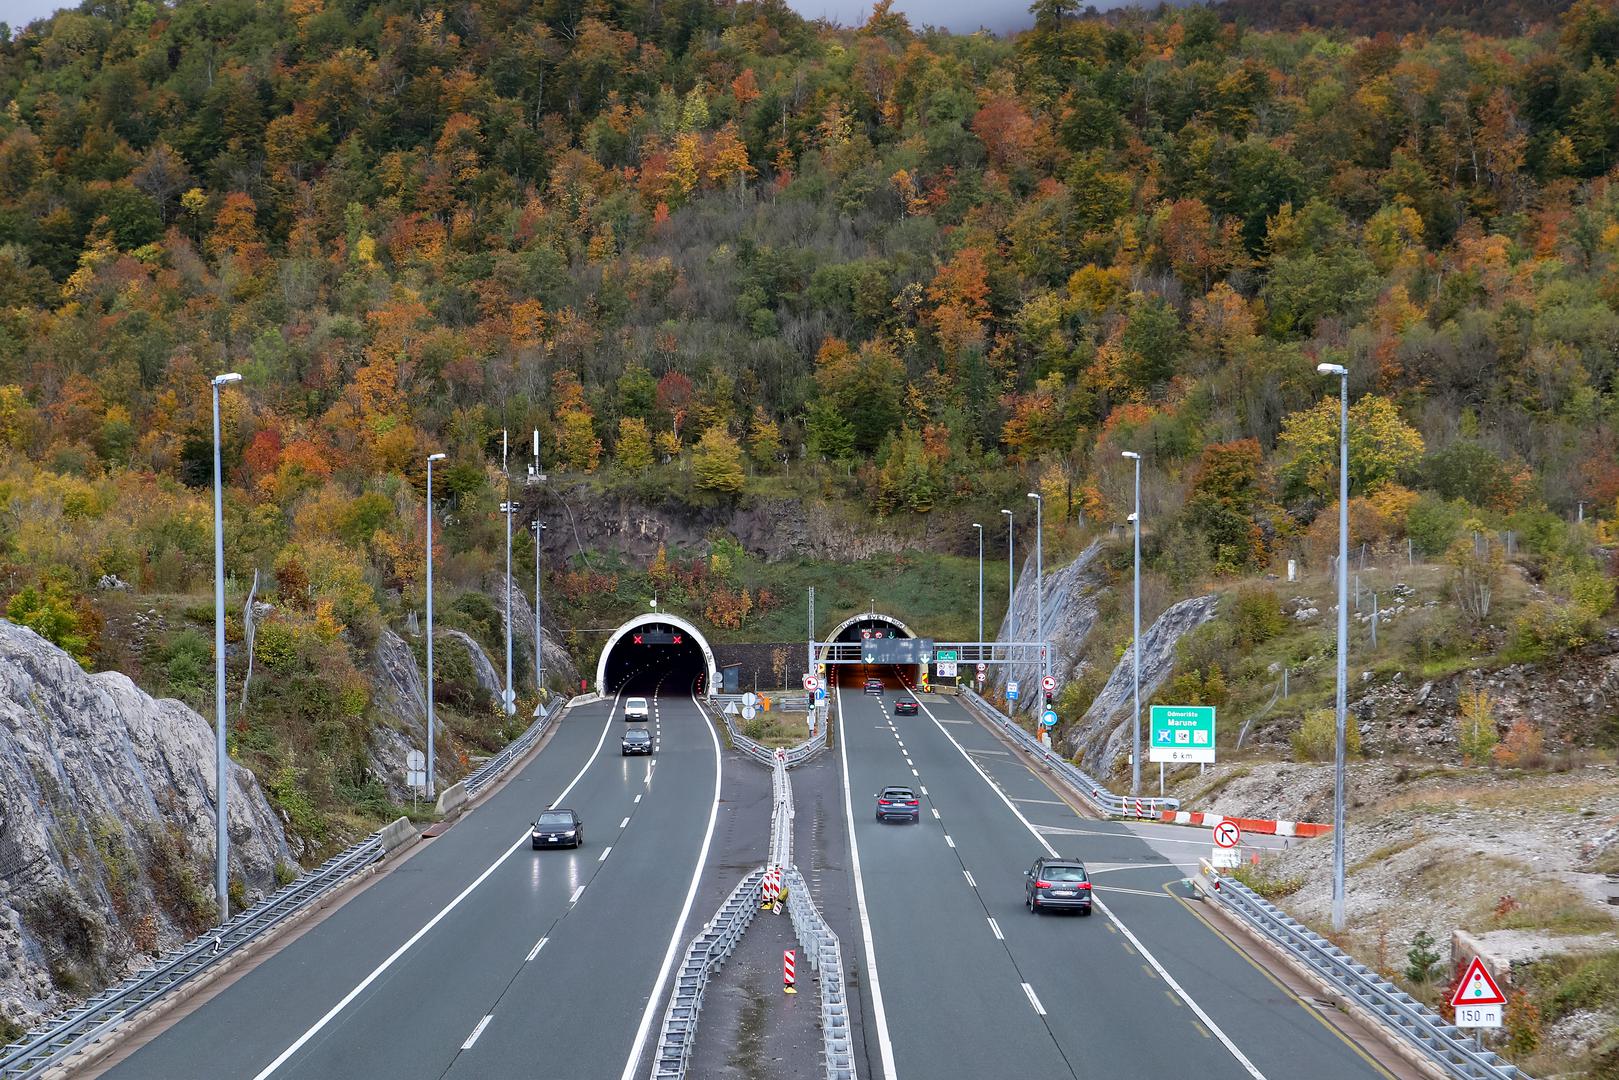 2. Tunel Sveti Rok, 5.679 metara: Tunel Sveti Rok, koji se nalazi na autocesti A1 u Lici, prolazi kroz planinski masiv Velebit. Sastoji se od dvije cijevi, a gradnja je započela 1993. godine, još za vrijeme okupacije sjeverne strane. Tunel su dovršile domaće tvrtke i 2003. otvorile zapadnu, a 2009. istočnu cijev.